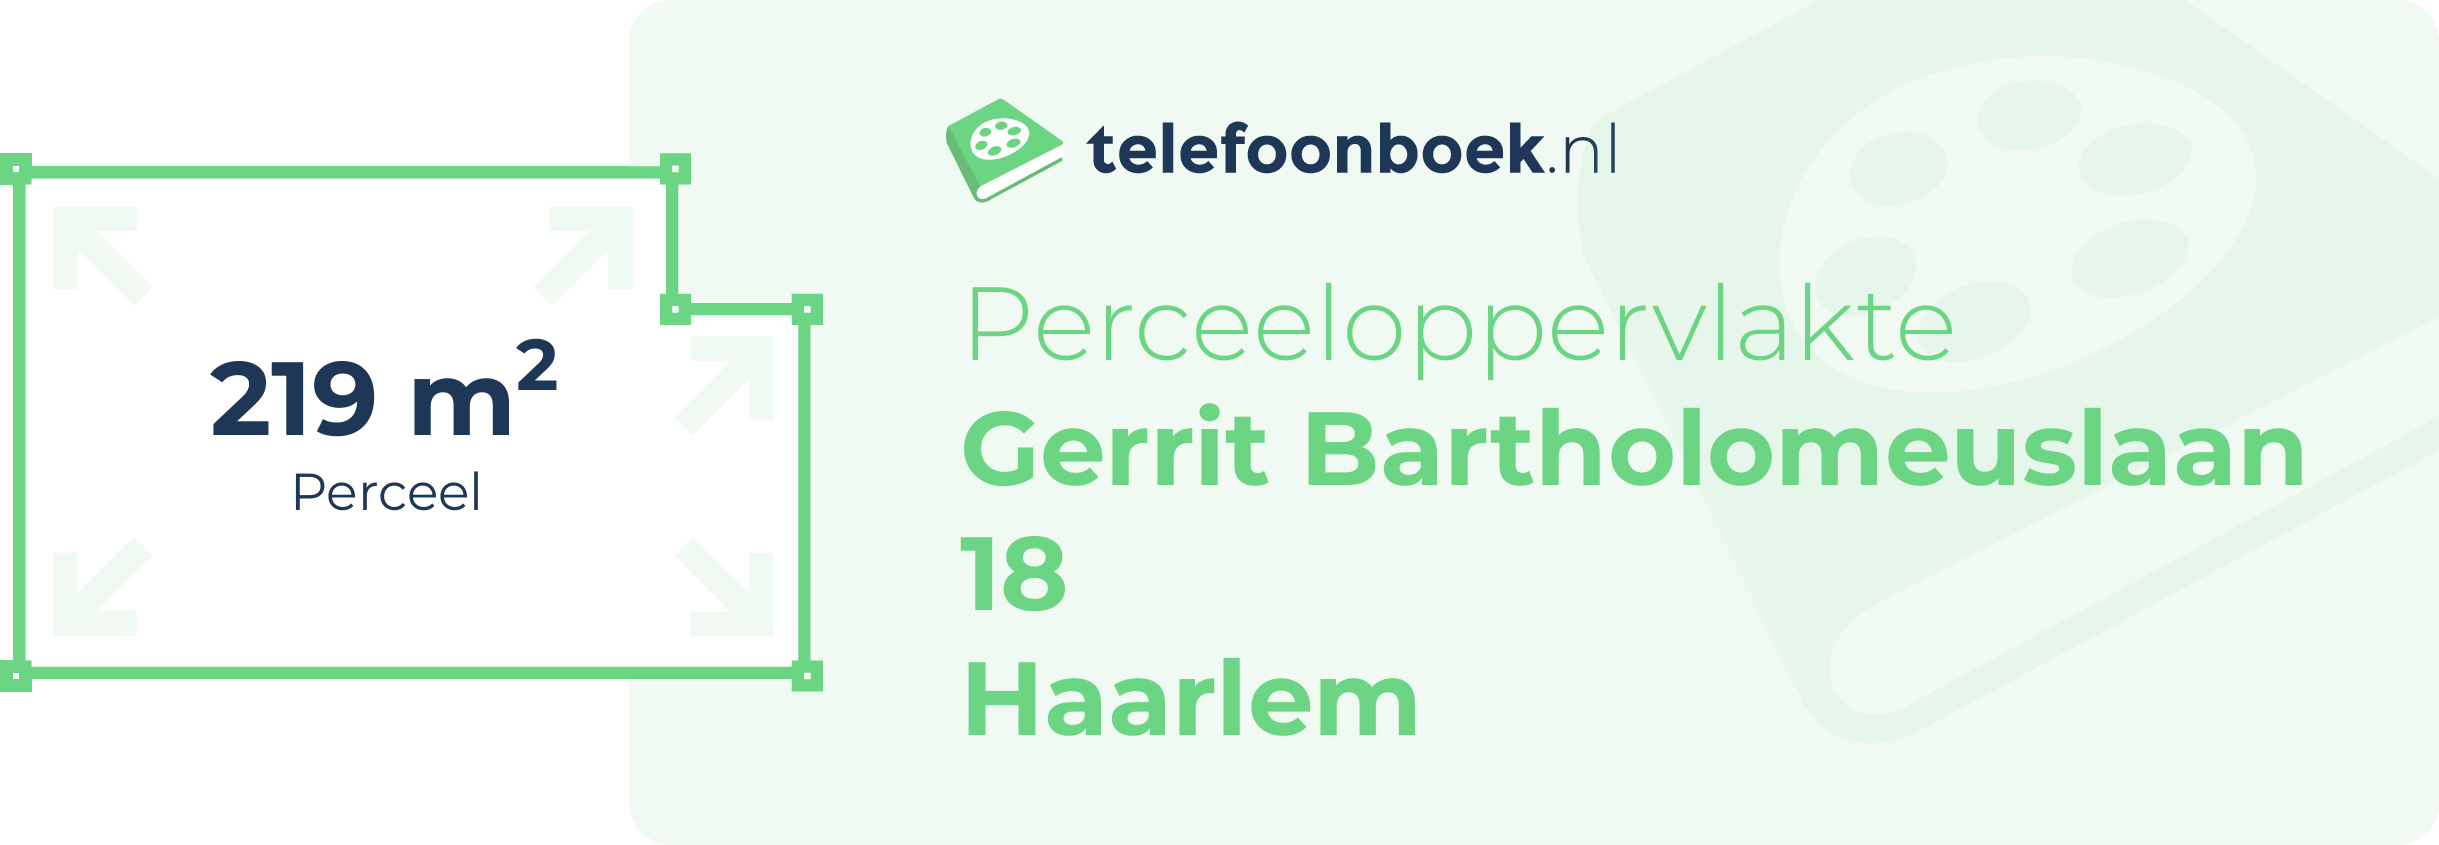 Perceeloppervlakte Gerrit Bartholomeuslaan 18 Haarlem